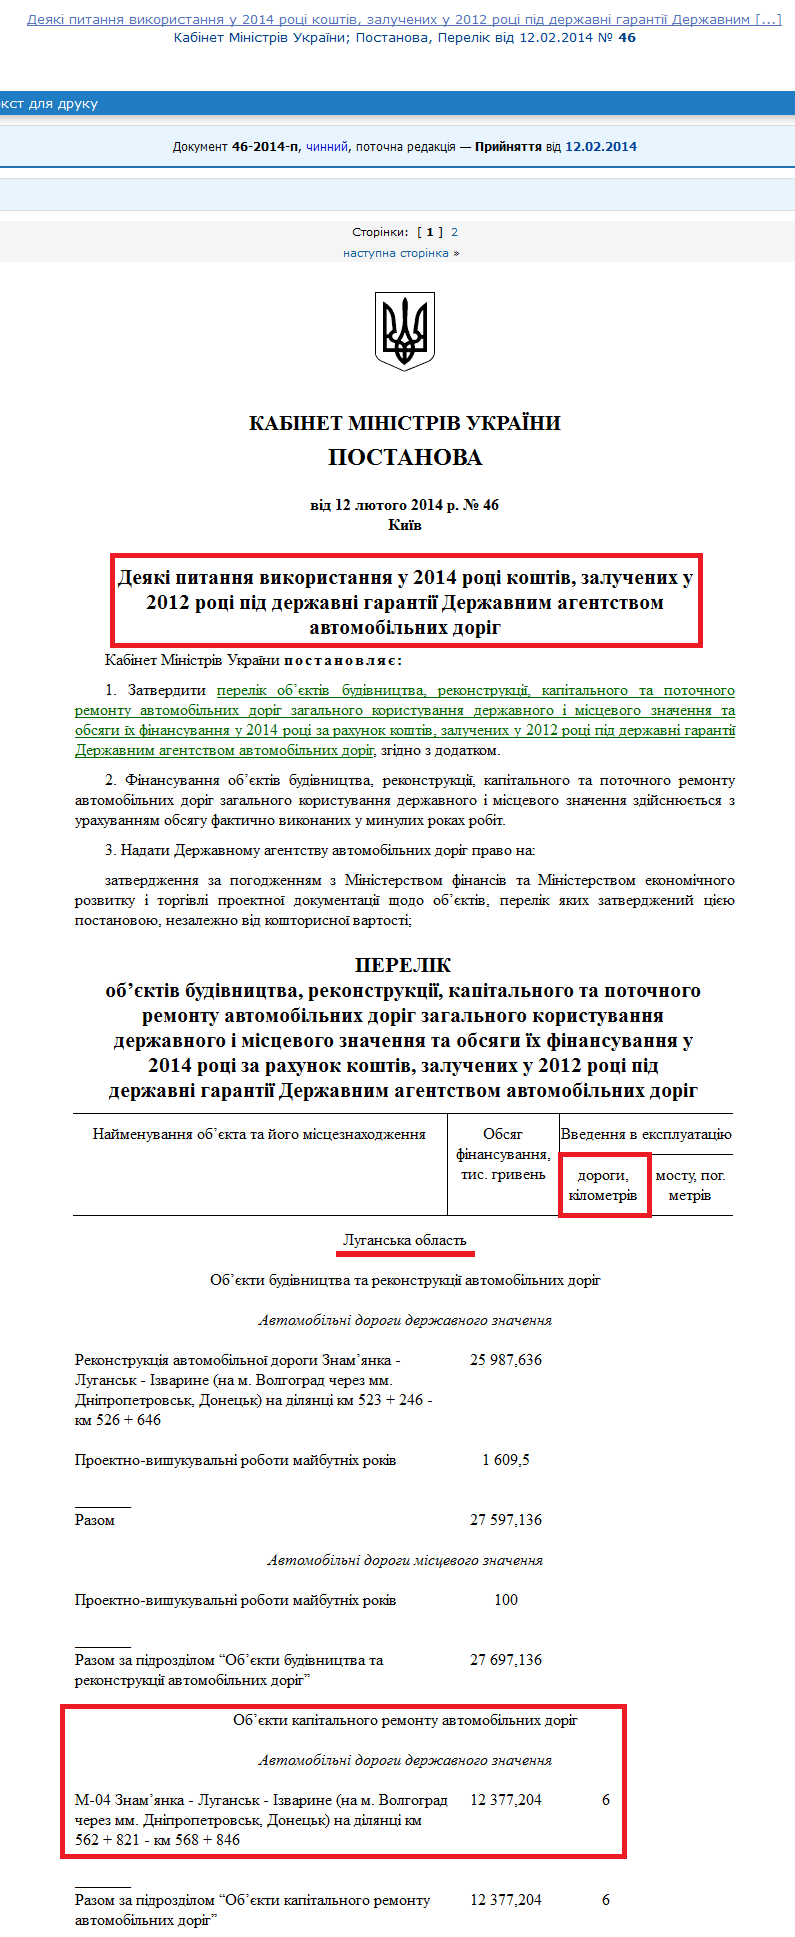 http://zakon2.rada.gov.ua/laws/show/46-2014-%D0%BF